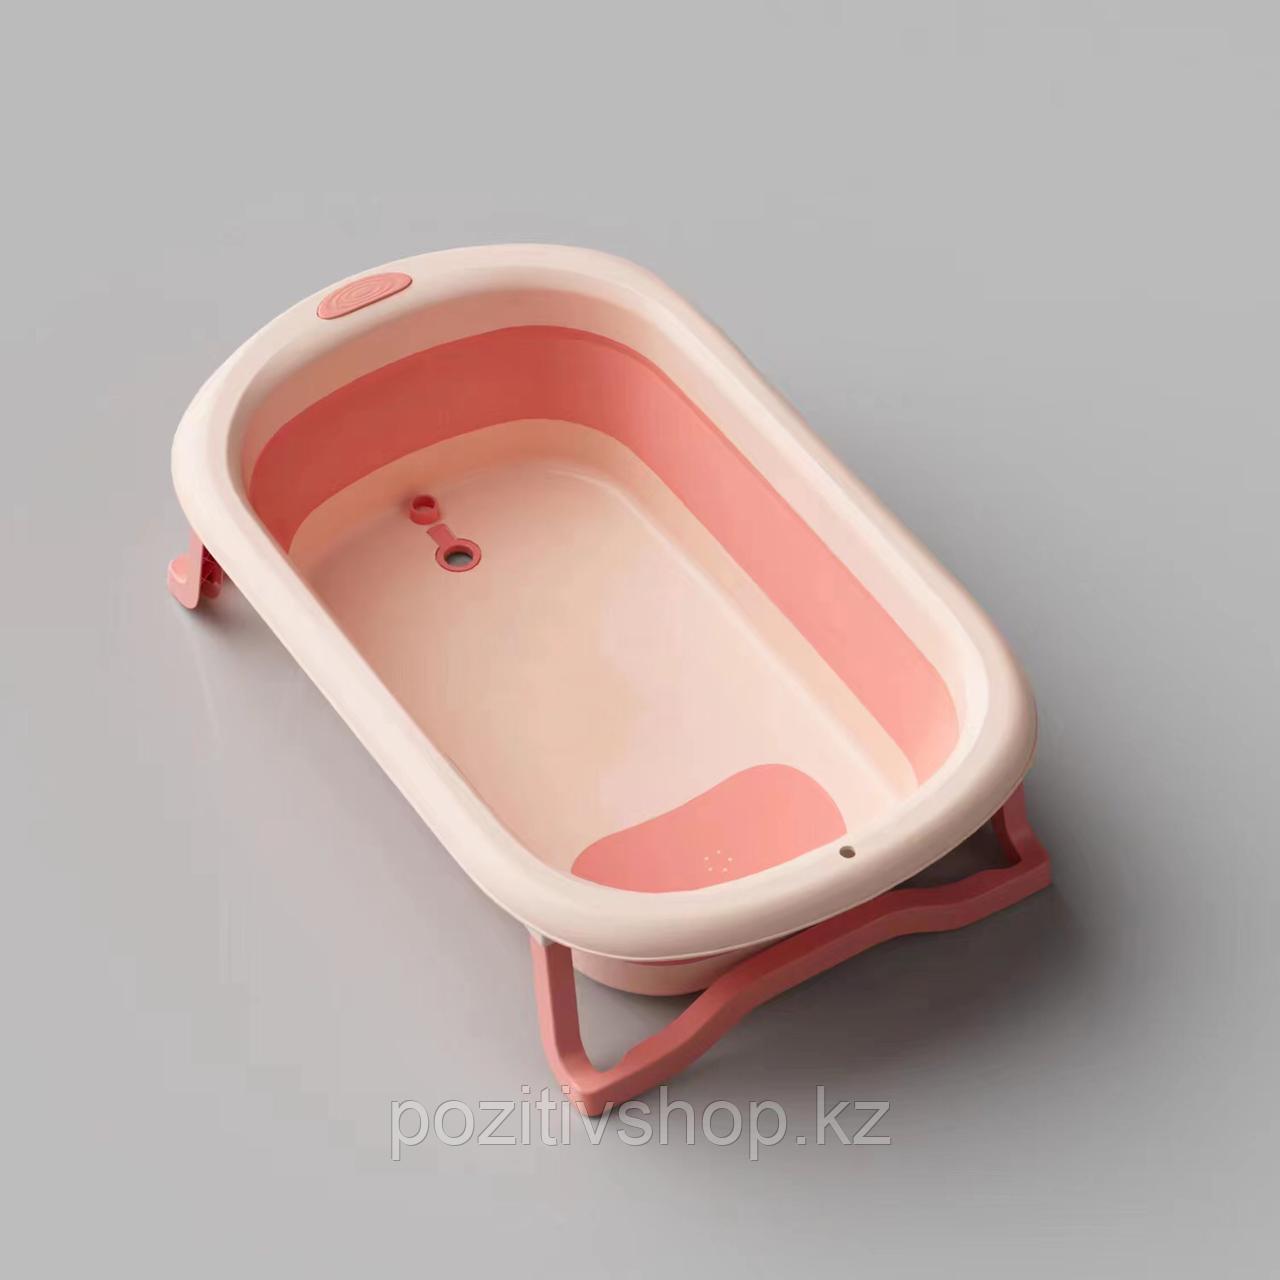 Детская ванночка складная N001 розовый